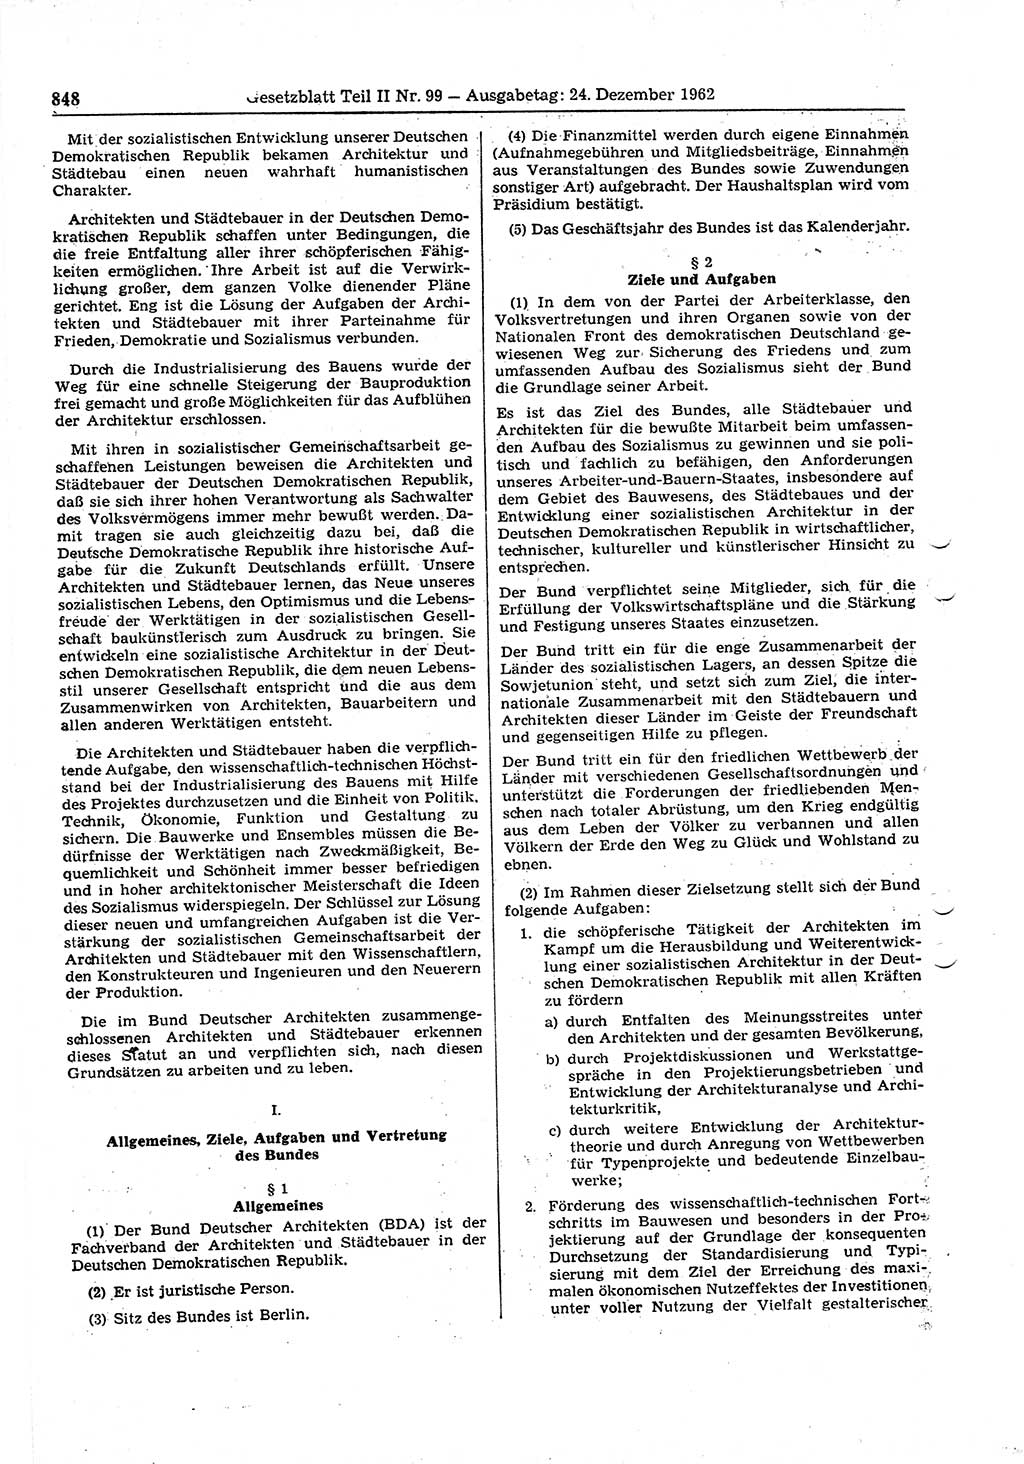 Gesetzblatt (GBl.) der Deutschen Demokratischen Republik (DDR) Teil ⅠⅠ 1962, Seite 848 (GBl. DDR ⅠⅠ 1962, S. 848)